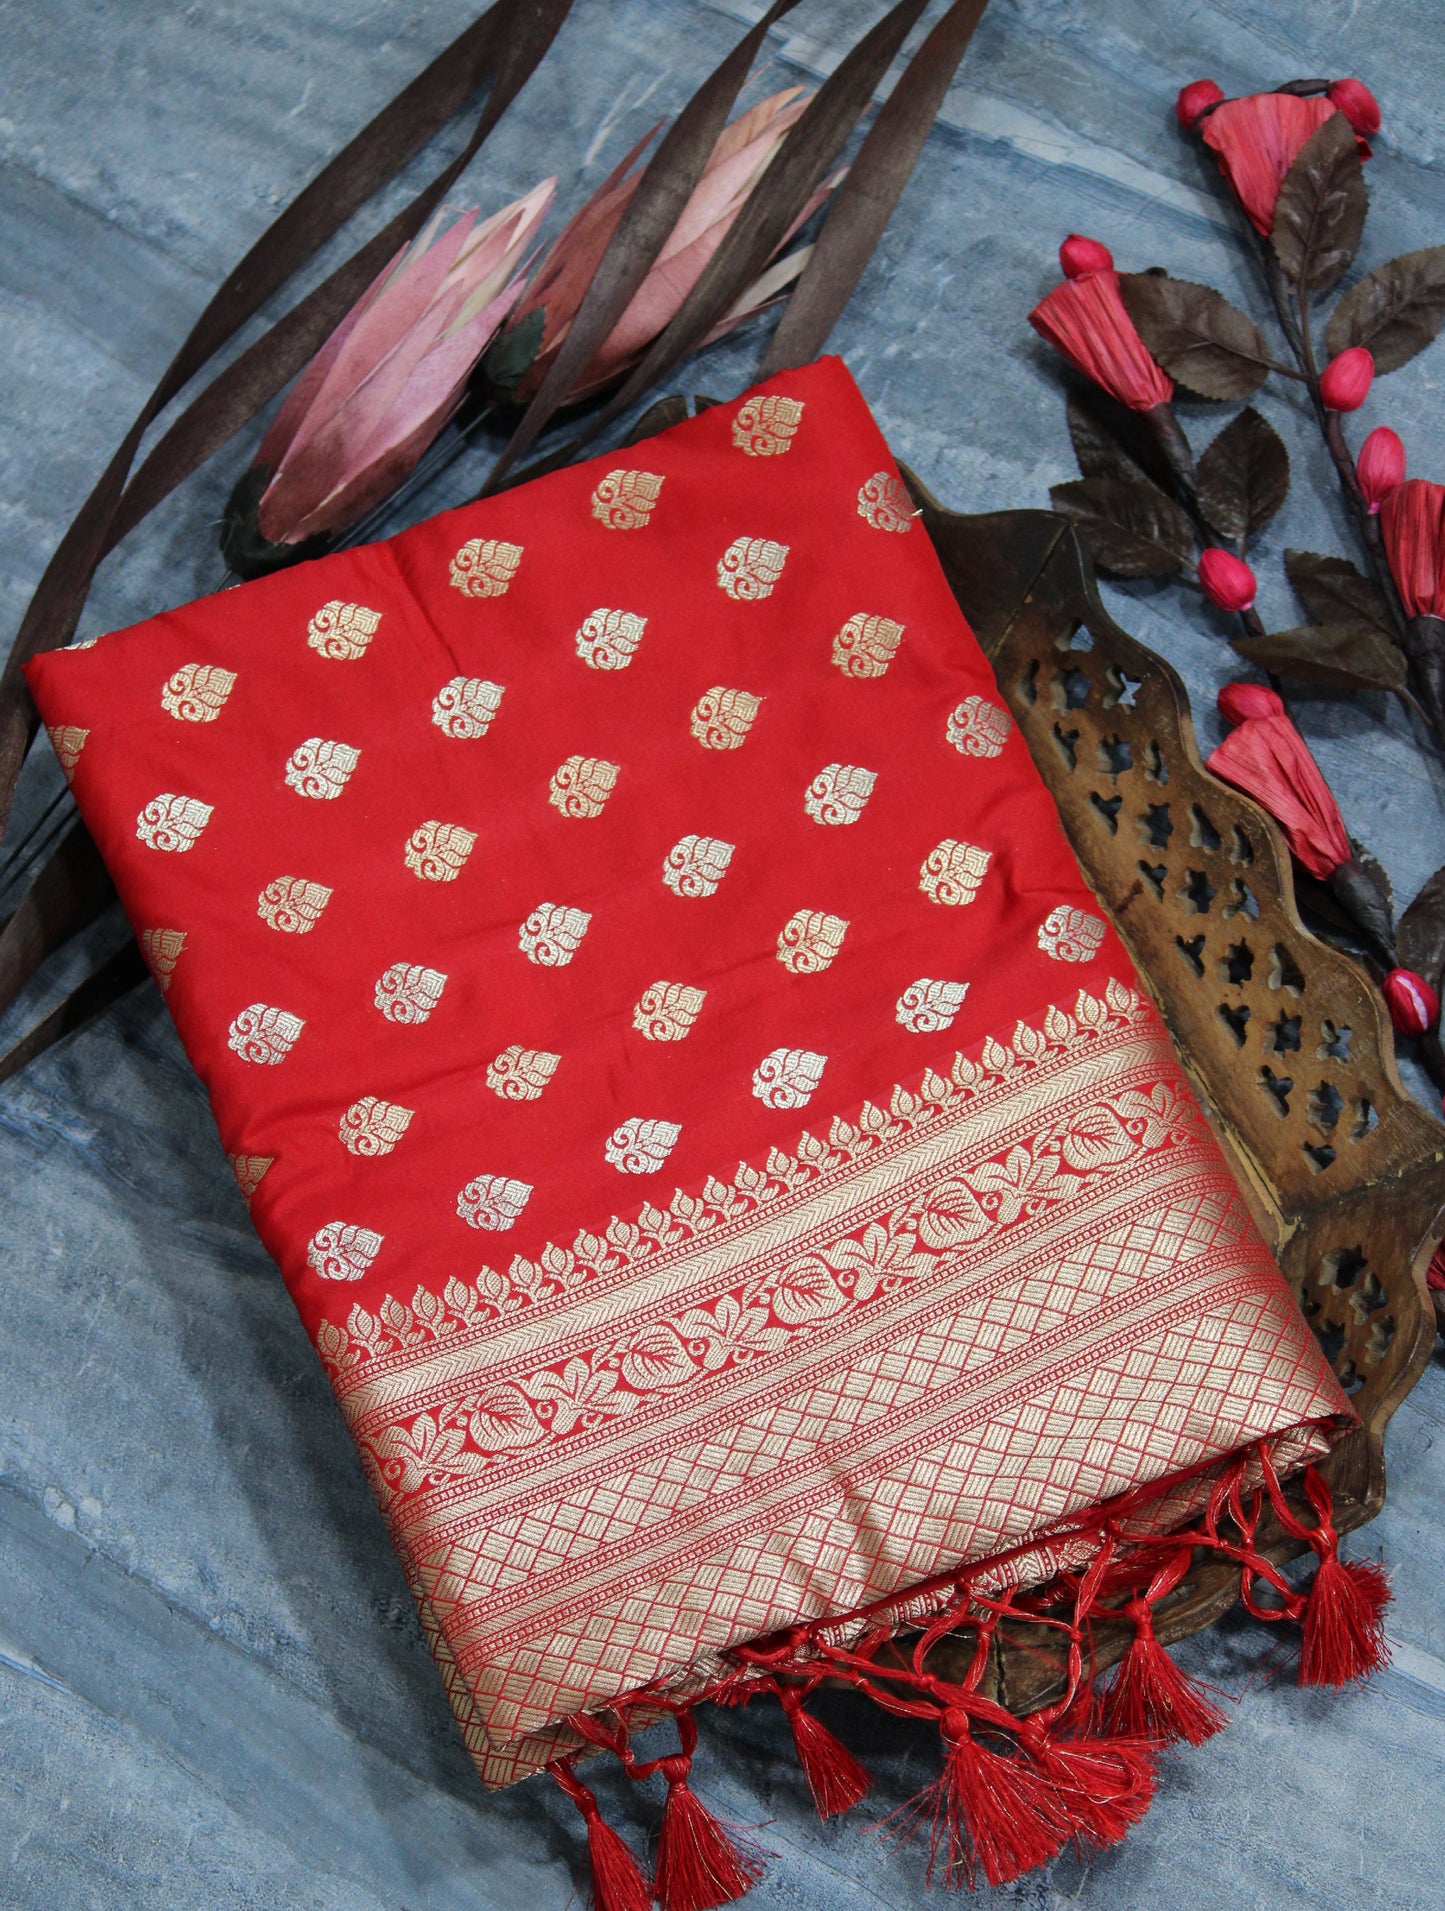 Red Soft Banarasi Katan Silk Saree